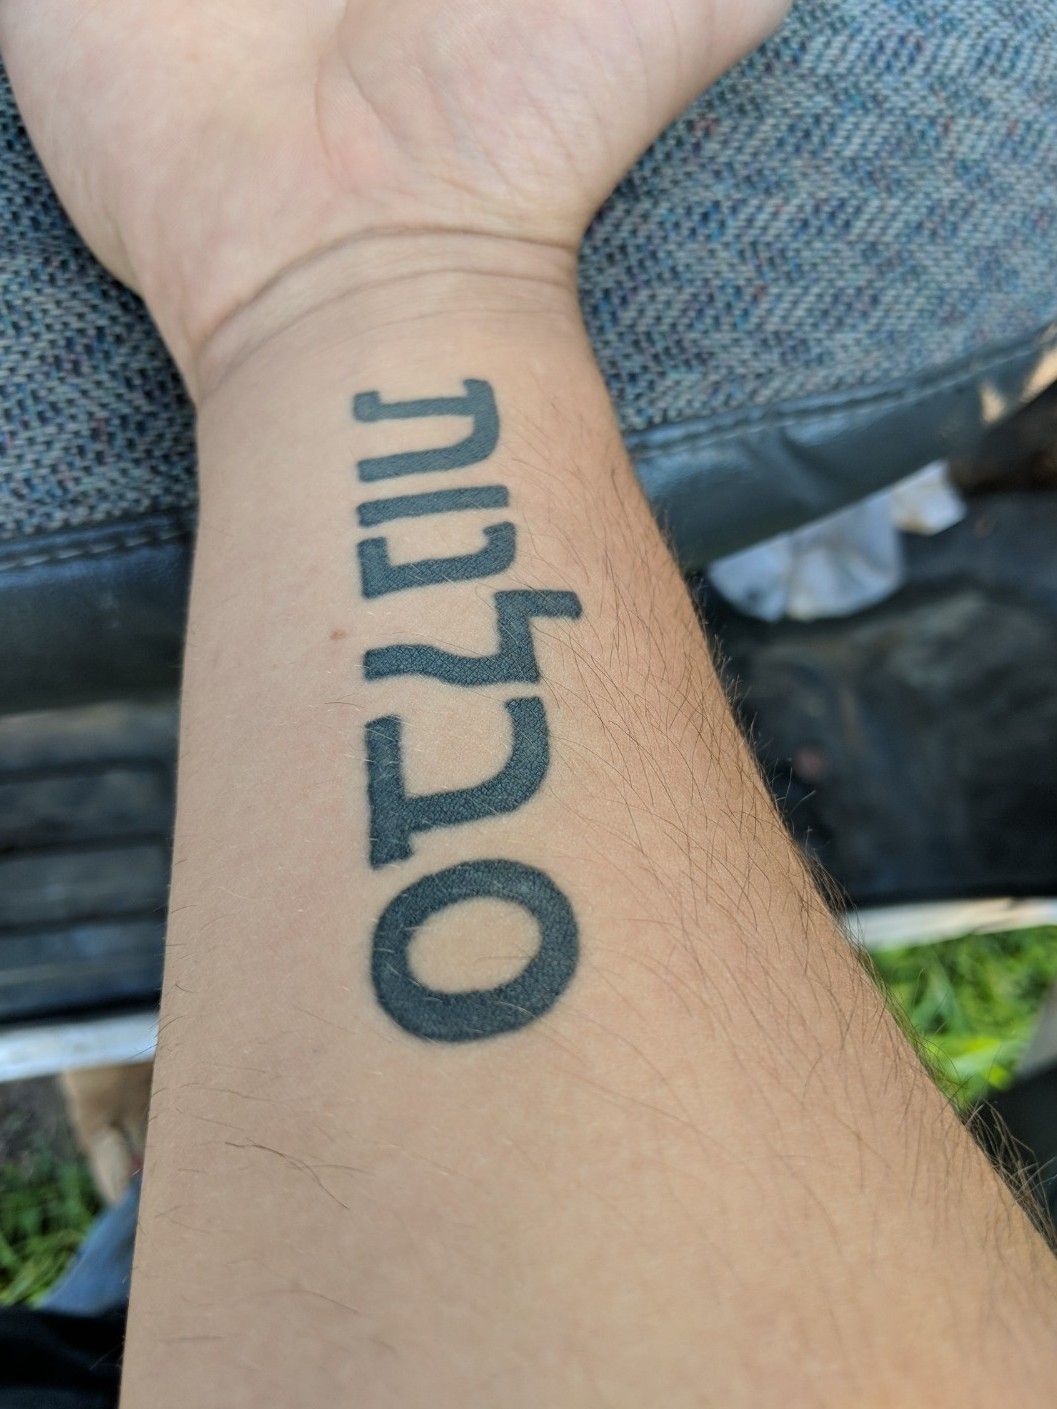 immanuel hebrew tattoo